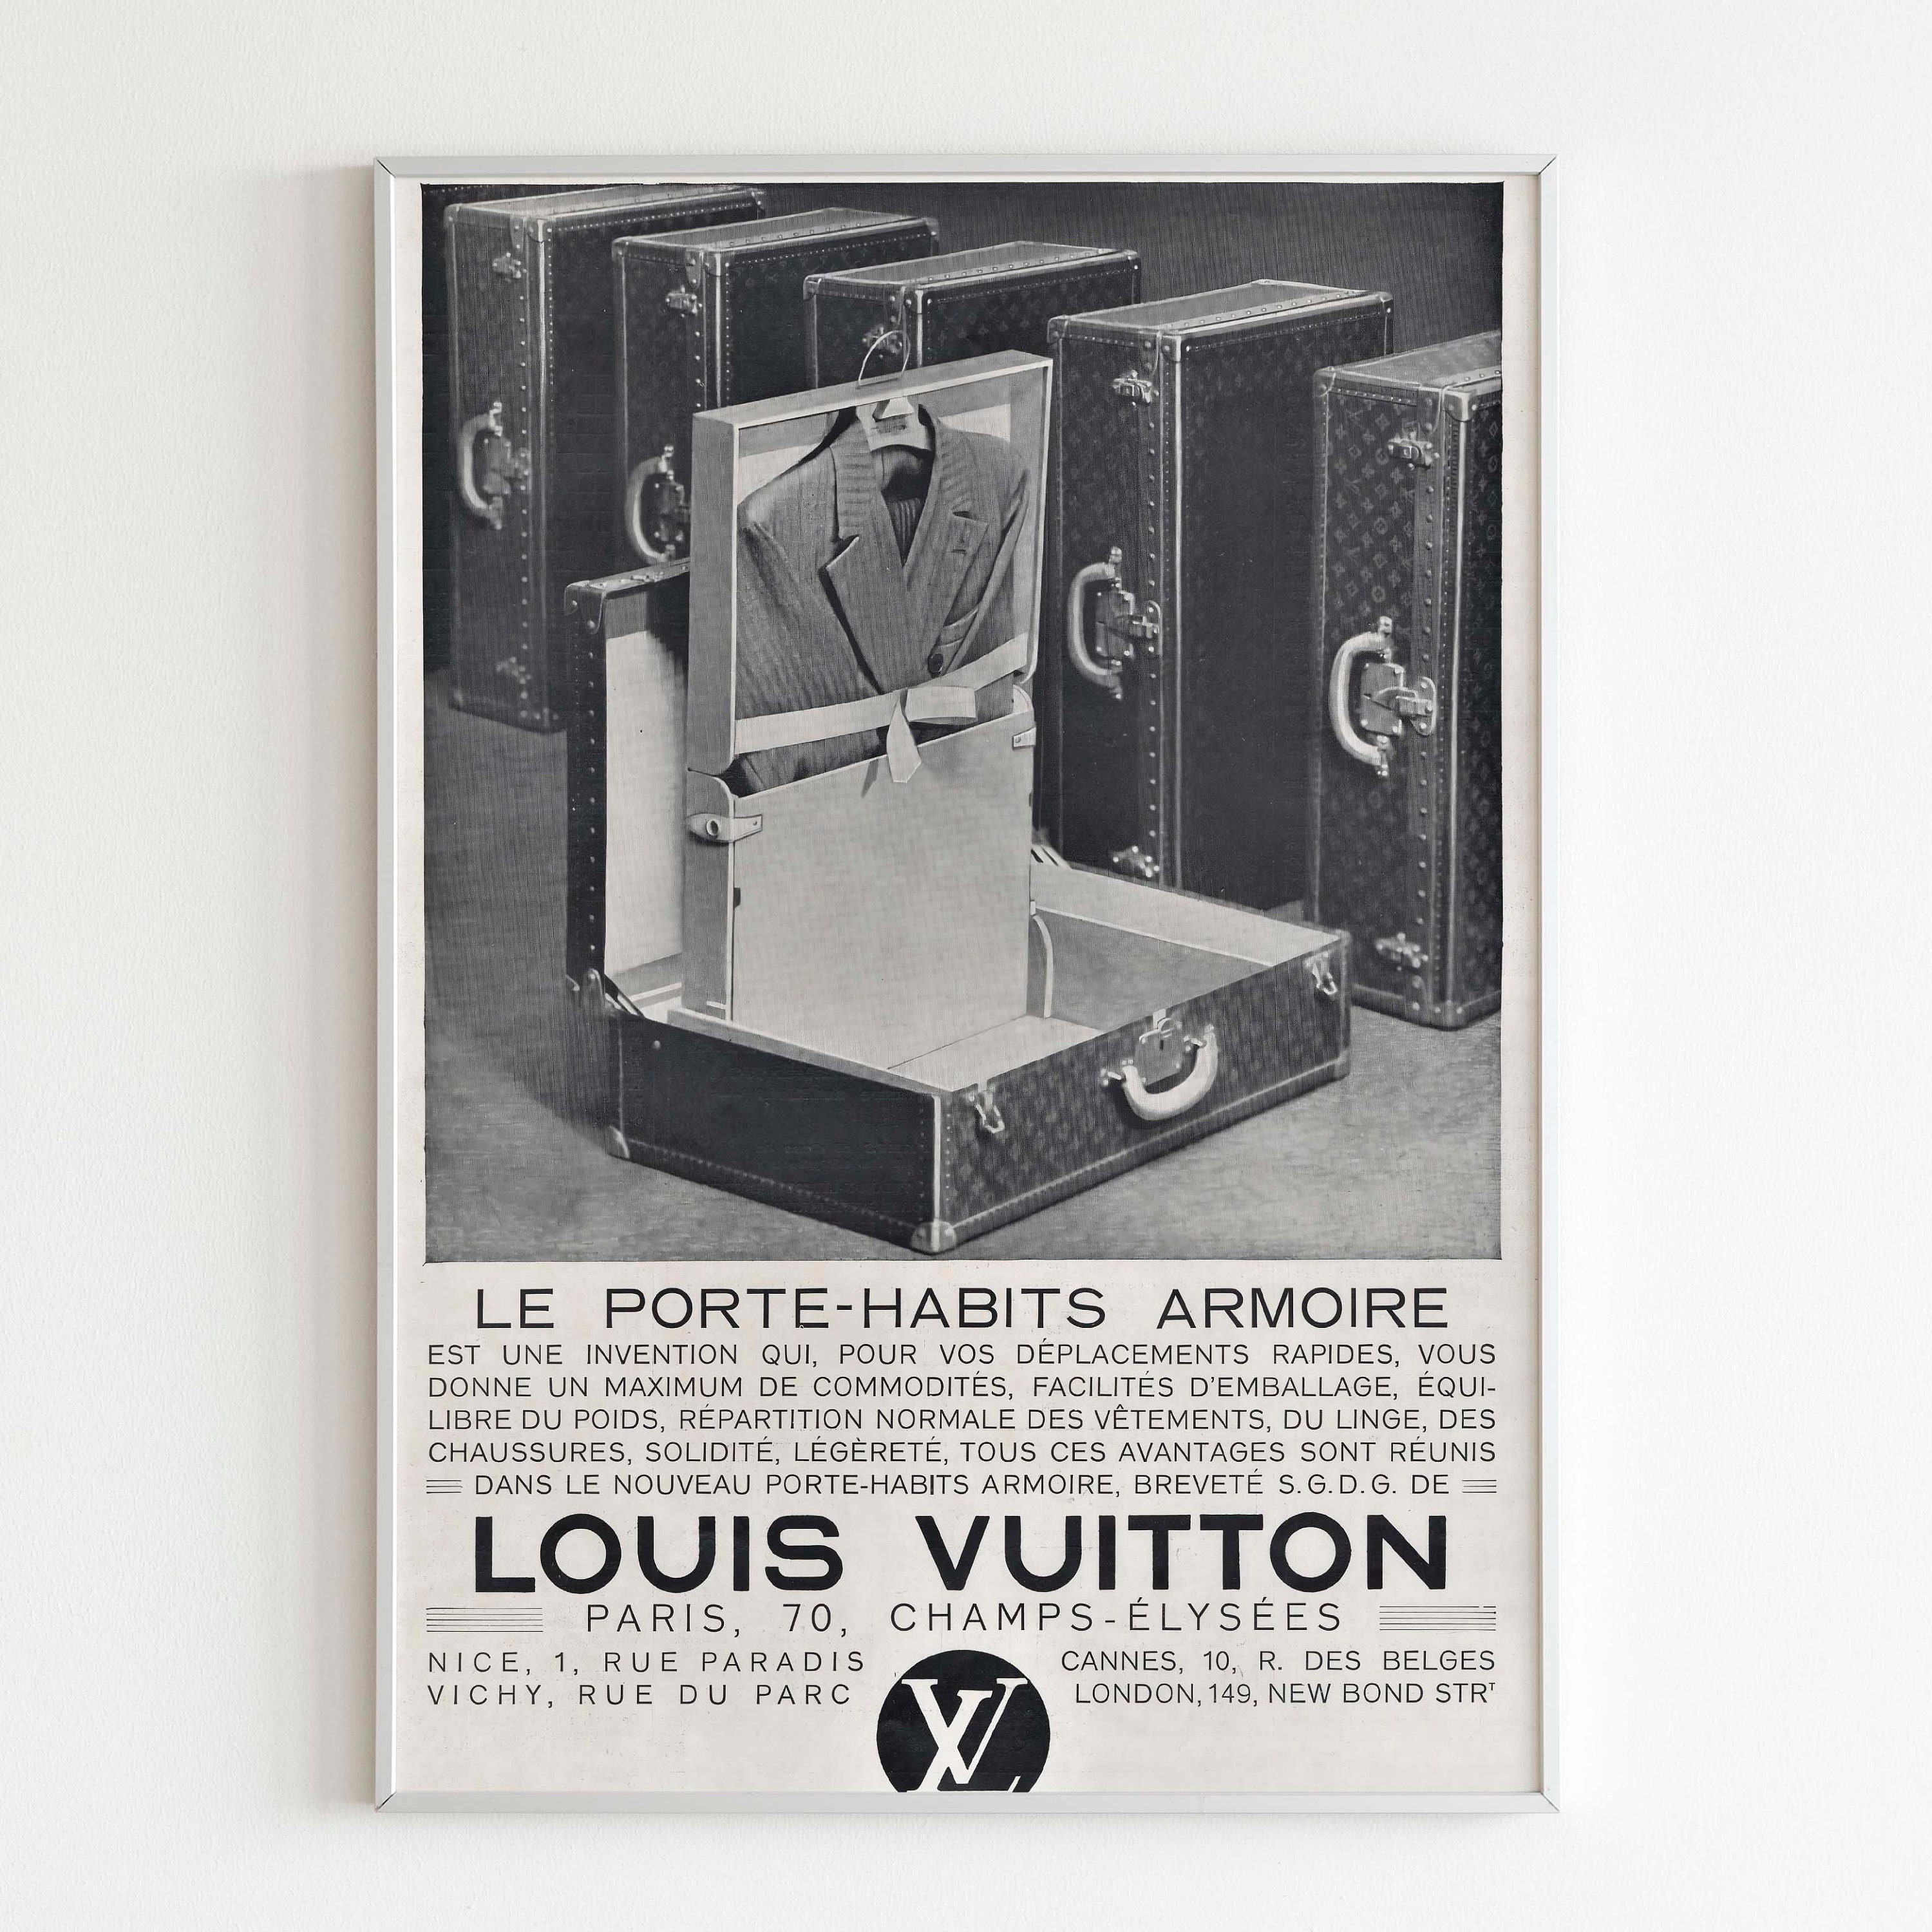 Louis Vuitton Ad -  UK